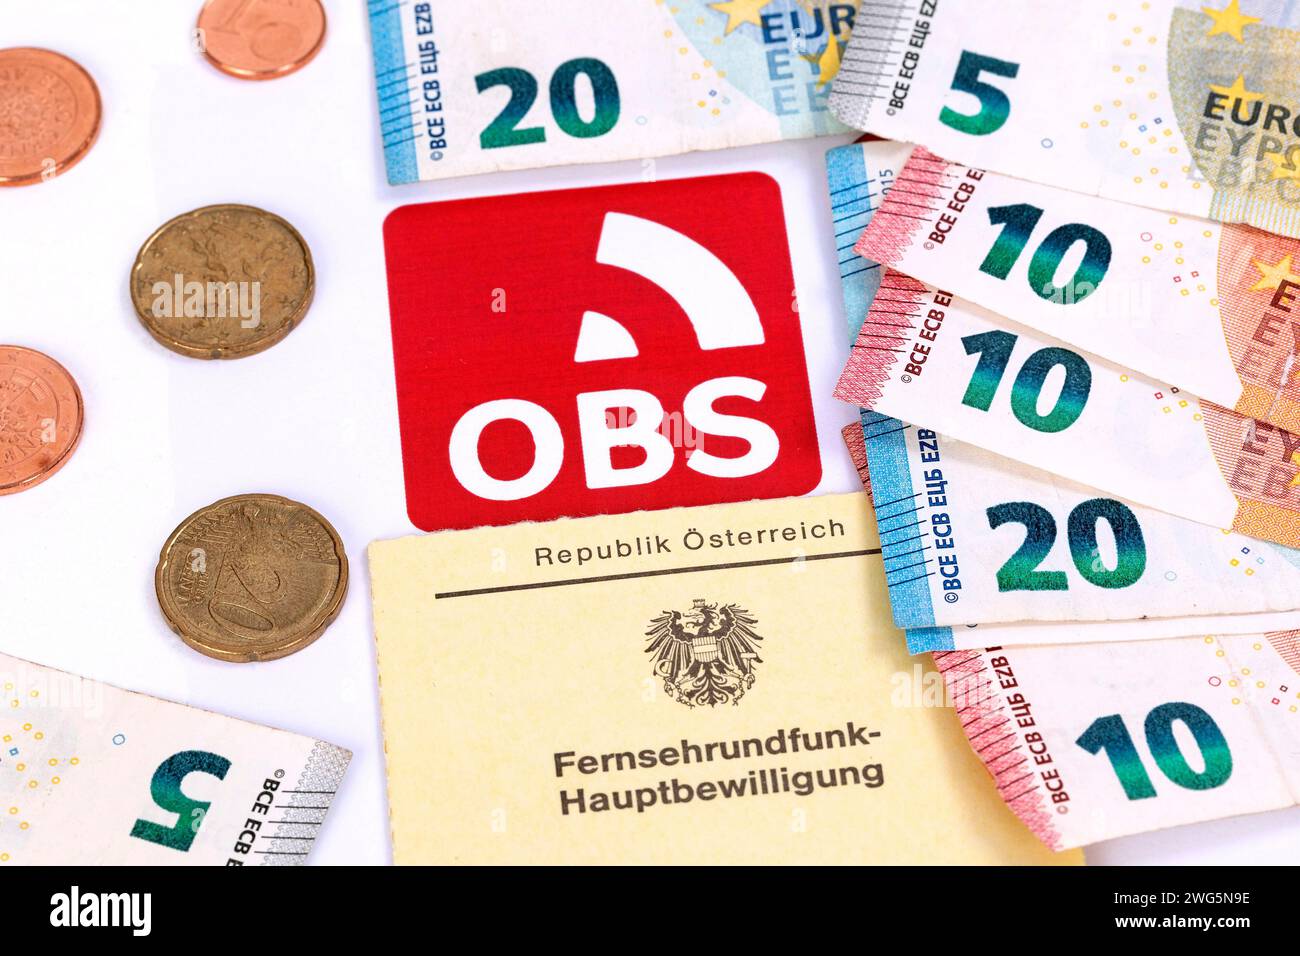 OBS, ORF contribution Service, Autriche Banque D'Images